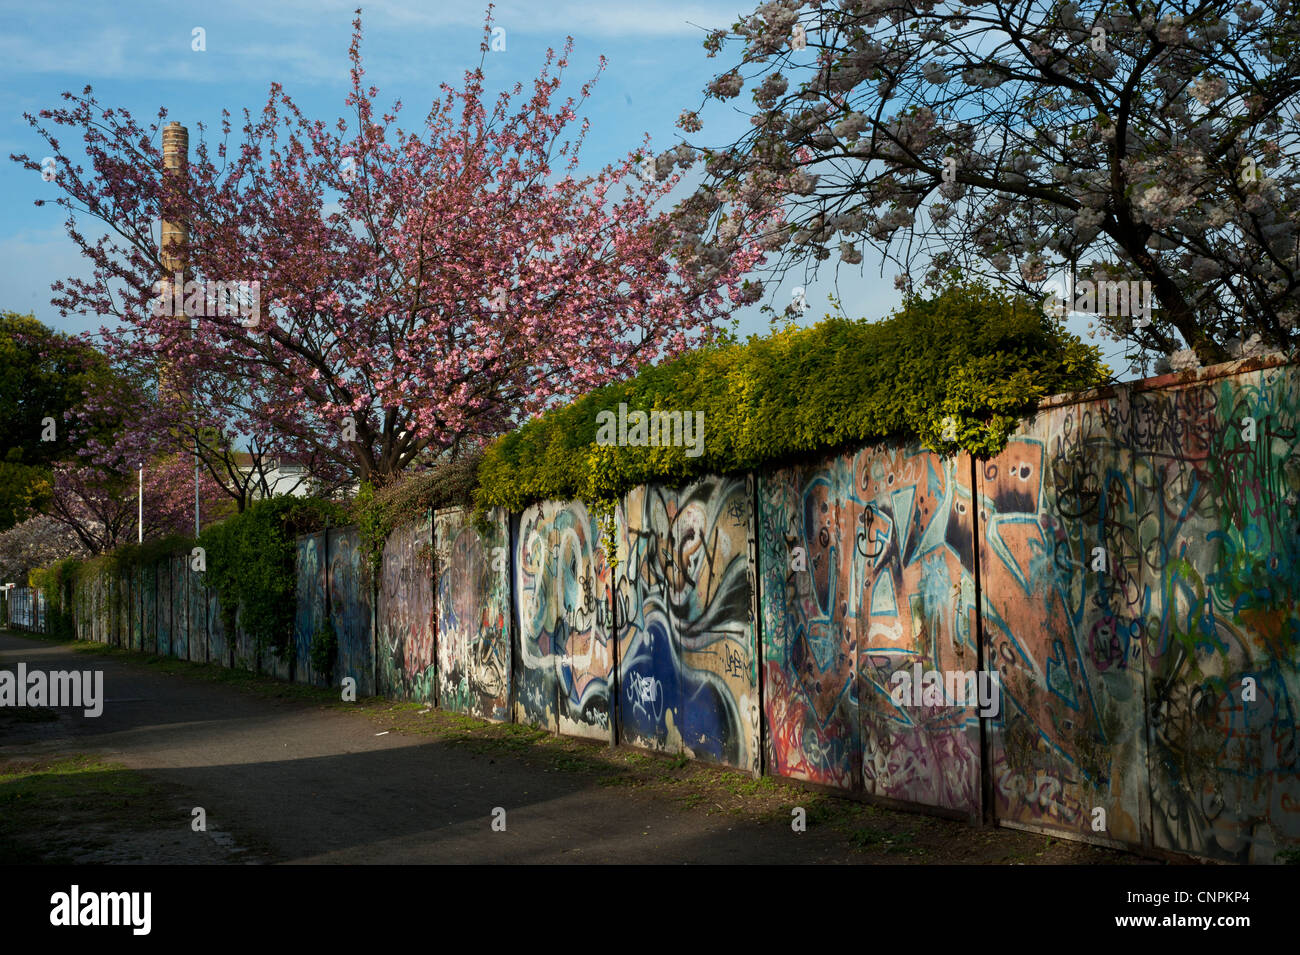 Le printemps à Berlin Neukölln. Mur de graffiti et un arbre avec des fleurs rose Banque D'Images